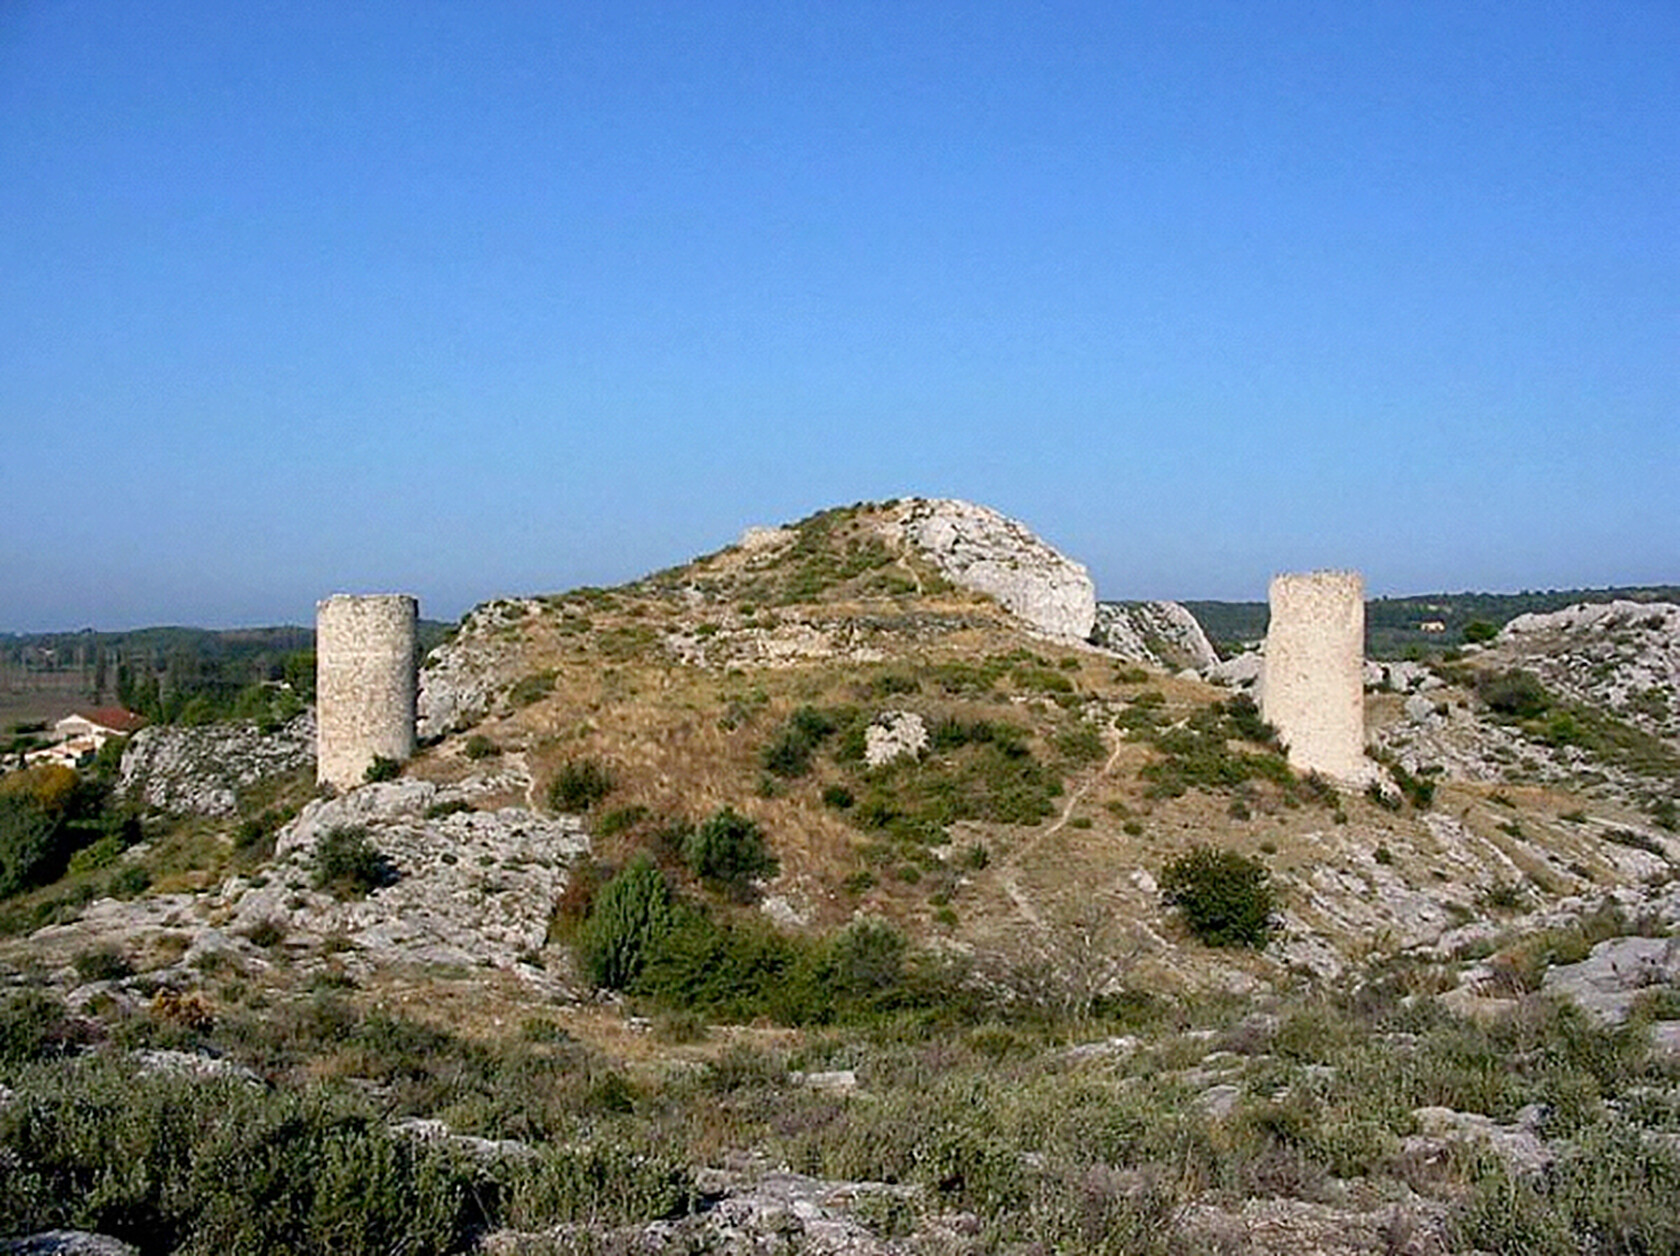 Maussane-les-Alpilles Castillon towers